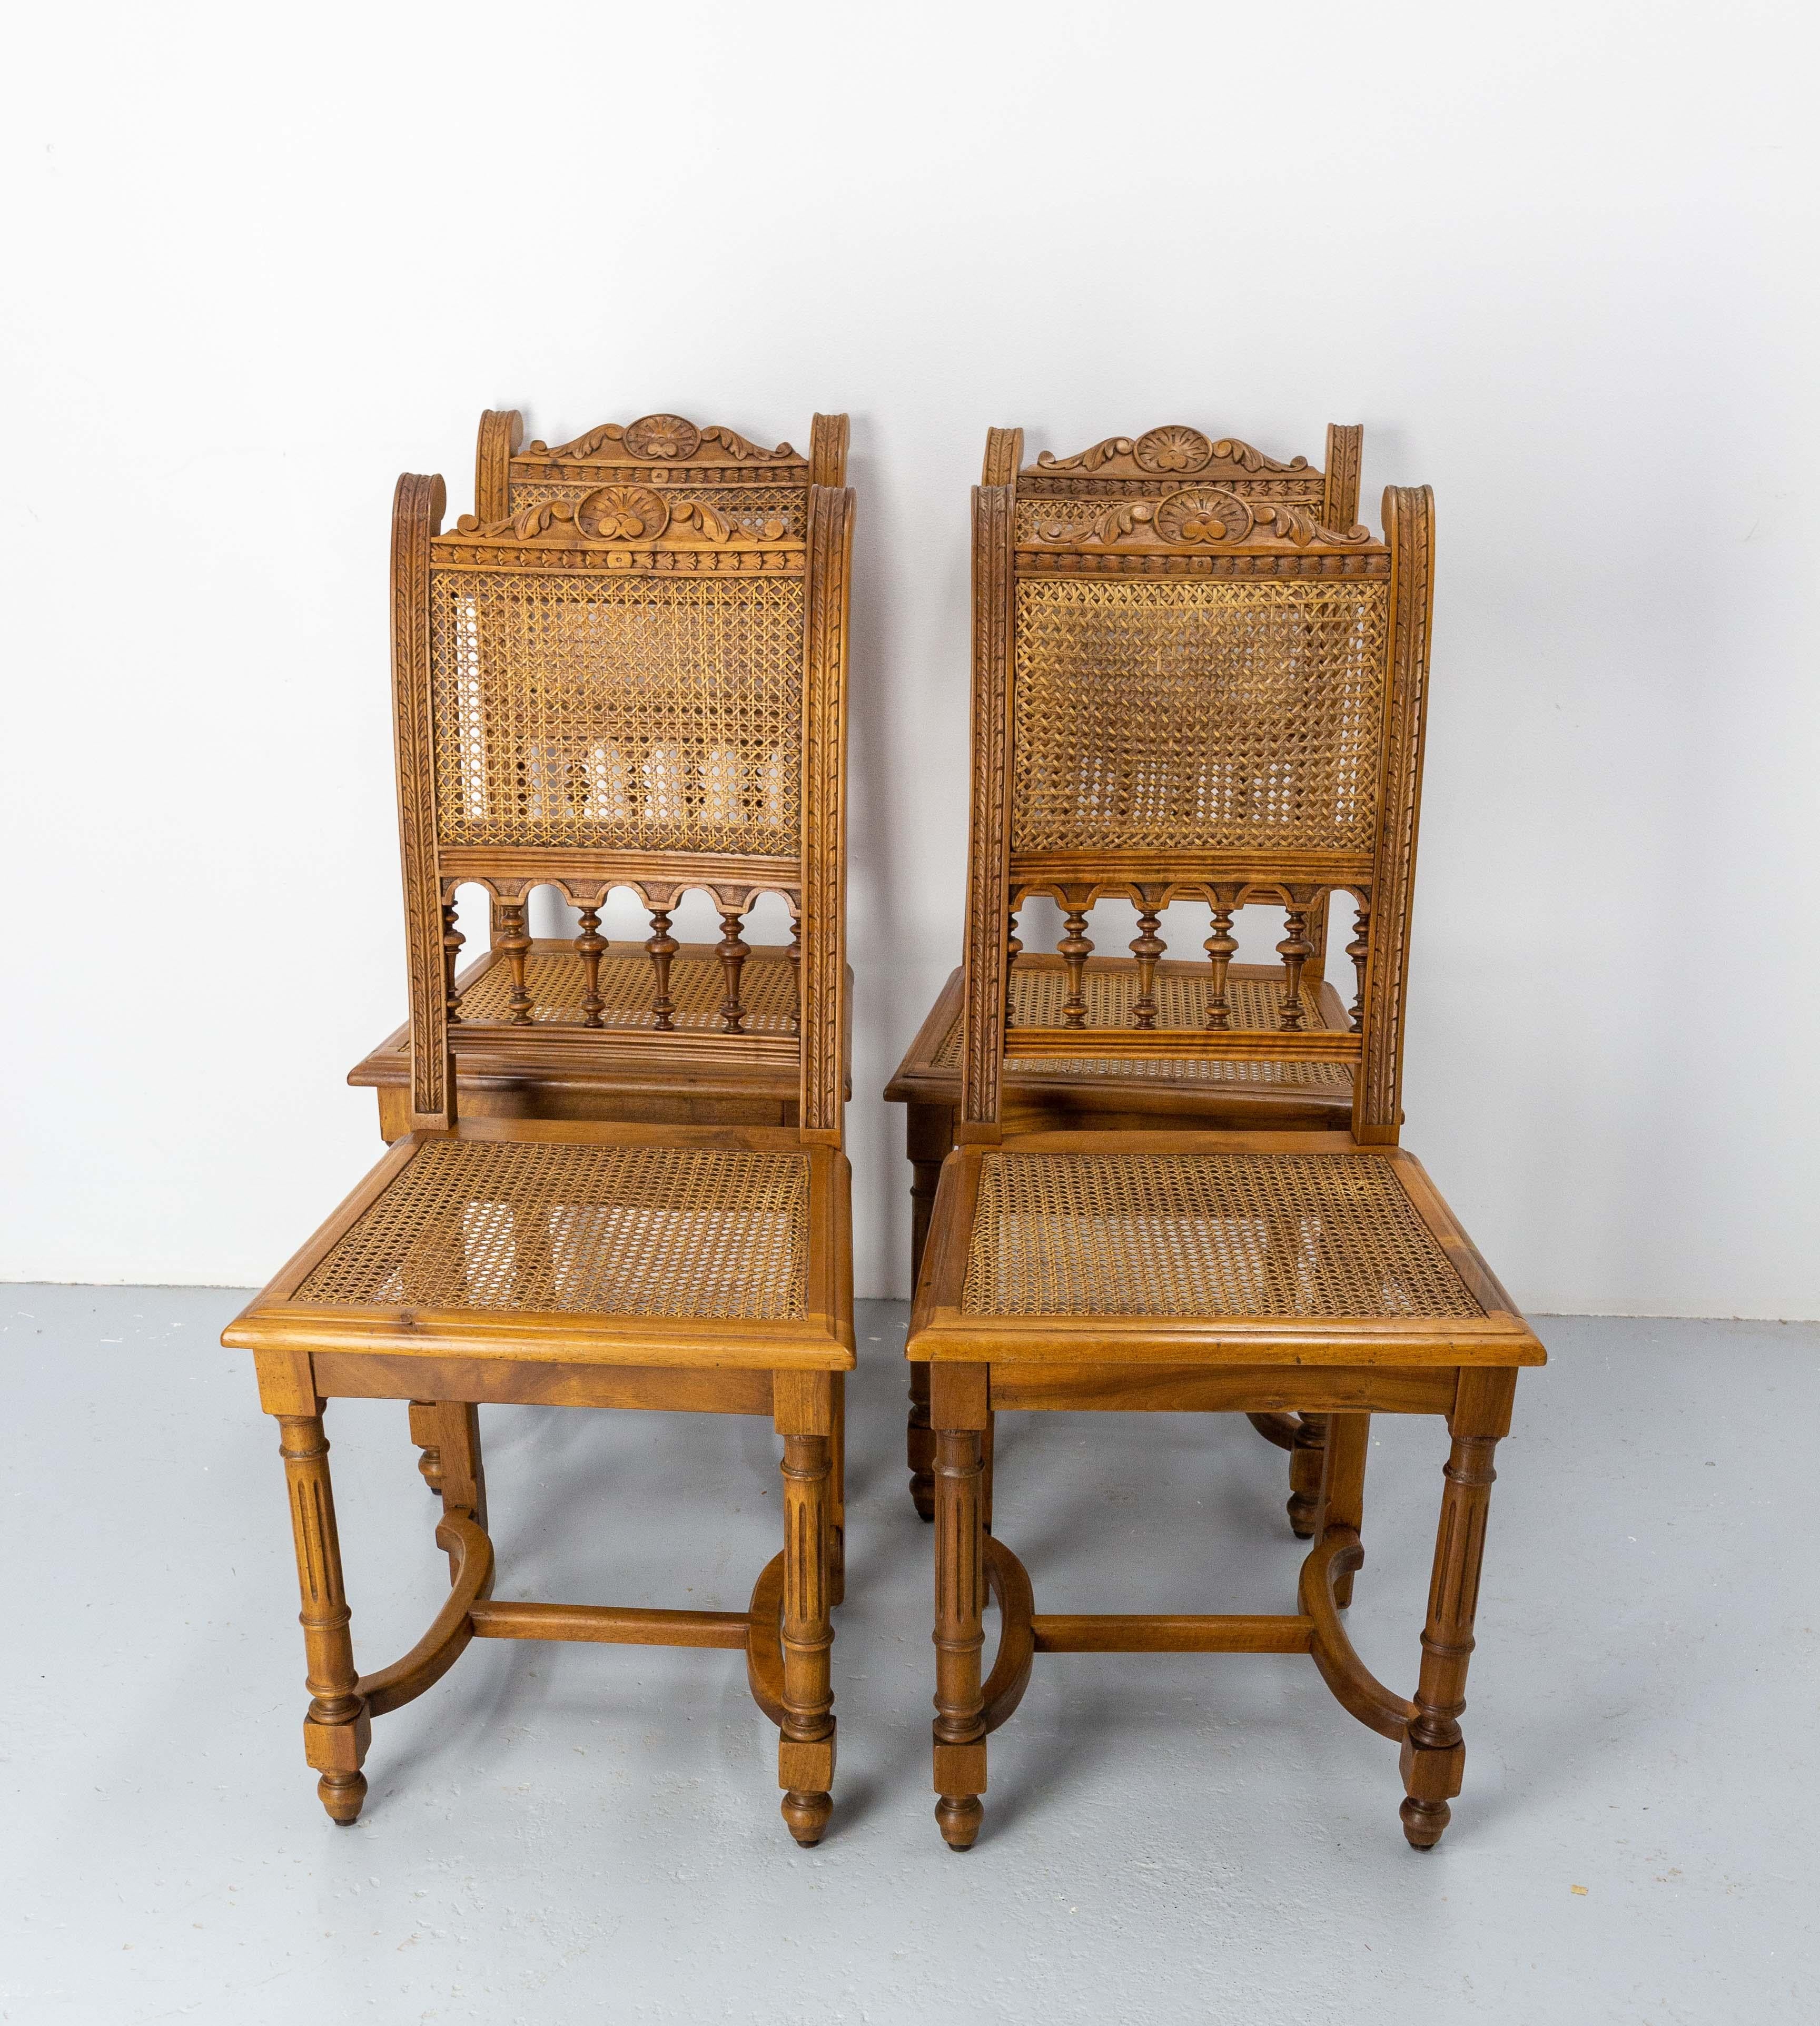 Vier französische Stühle im Stil von Louis 13.
Nussbaum und Schilfrohr.
Guter Zustand.

Versand :
67 / 90 / 95 cm 16 kg.